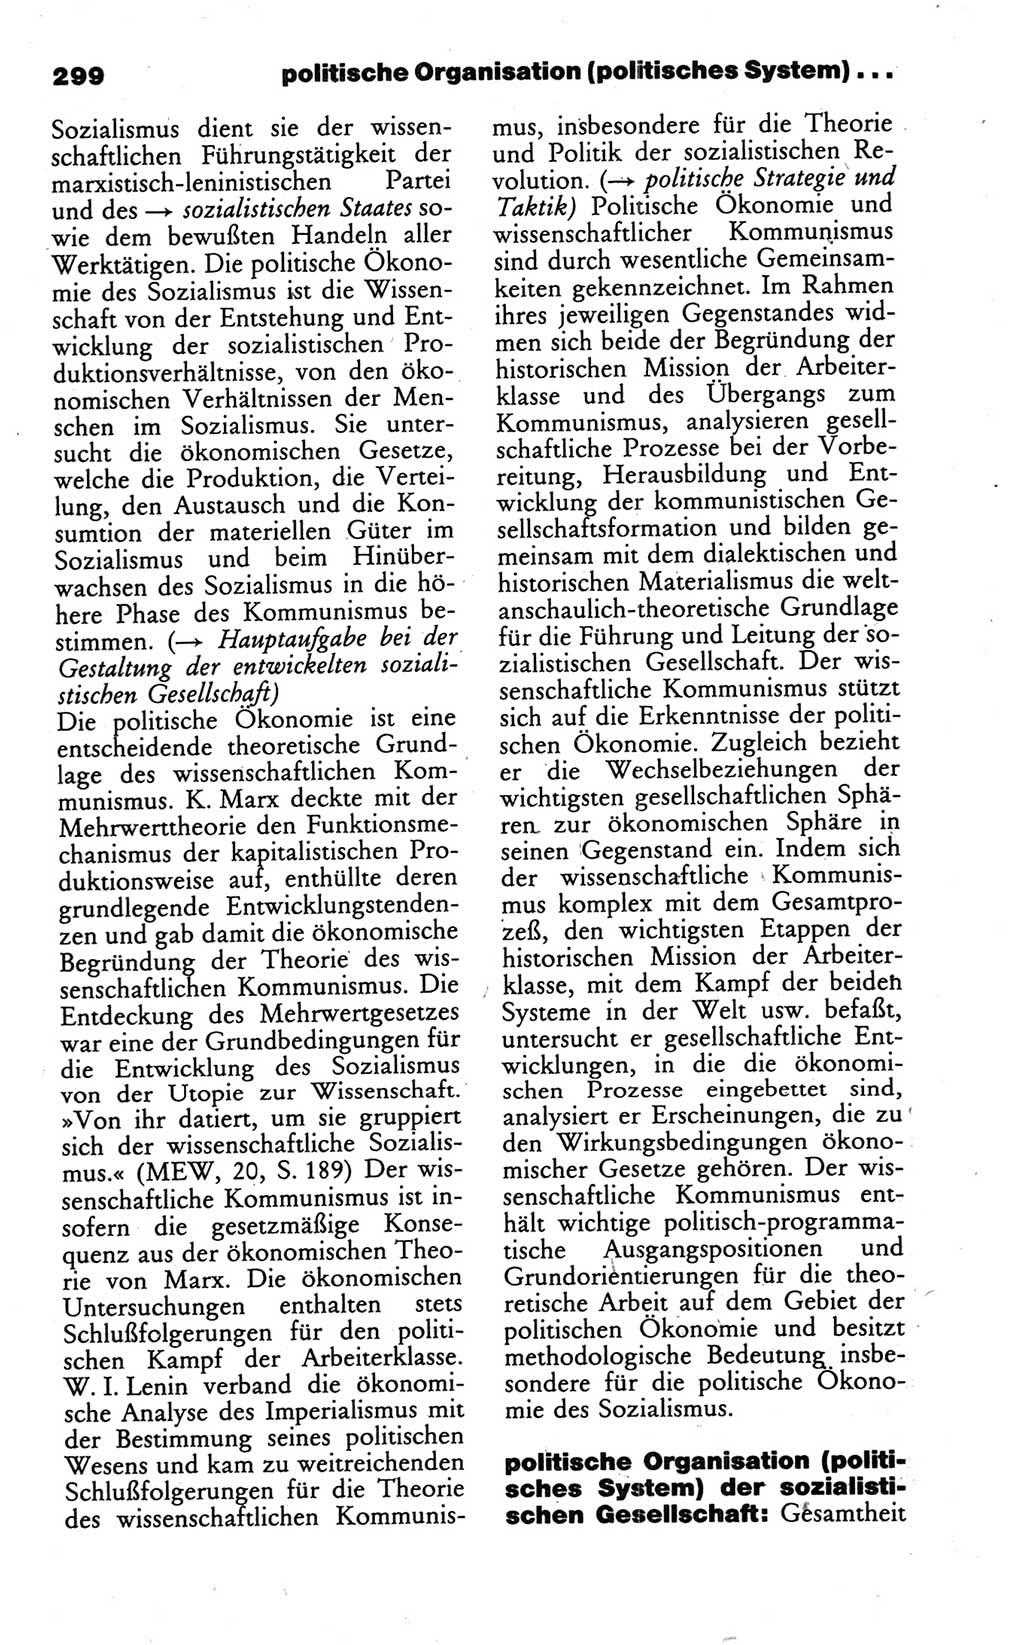 Wörterbuch des wissenschaftlichen Kommunismus [Deutsche Demokratische Republik (DDR)] 1986, Seite 299 (Wb. wiss. Komm. DDR 1986, S. 299)